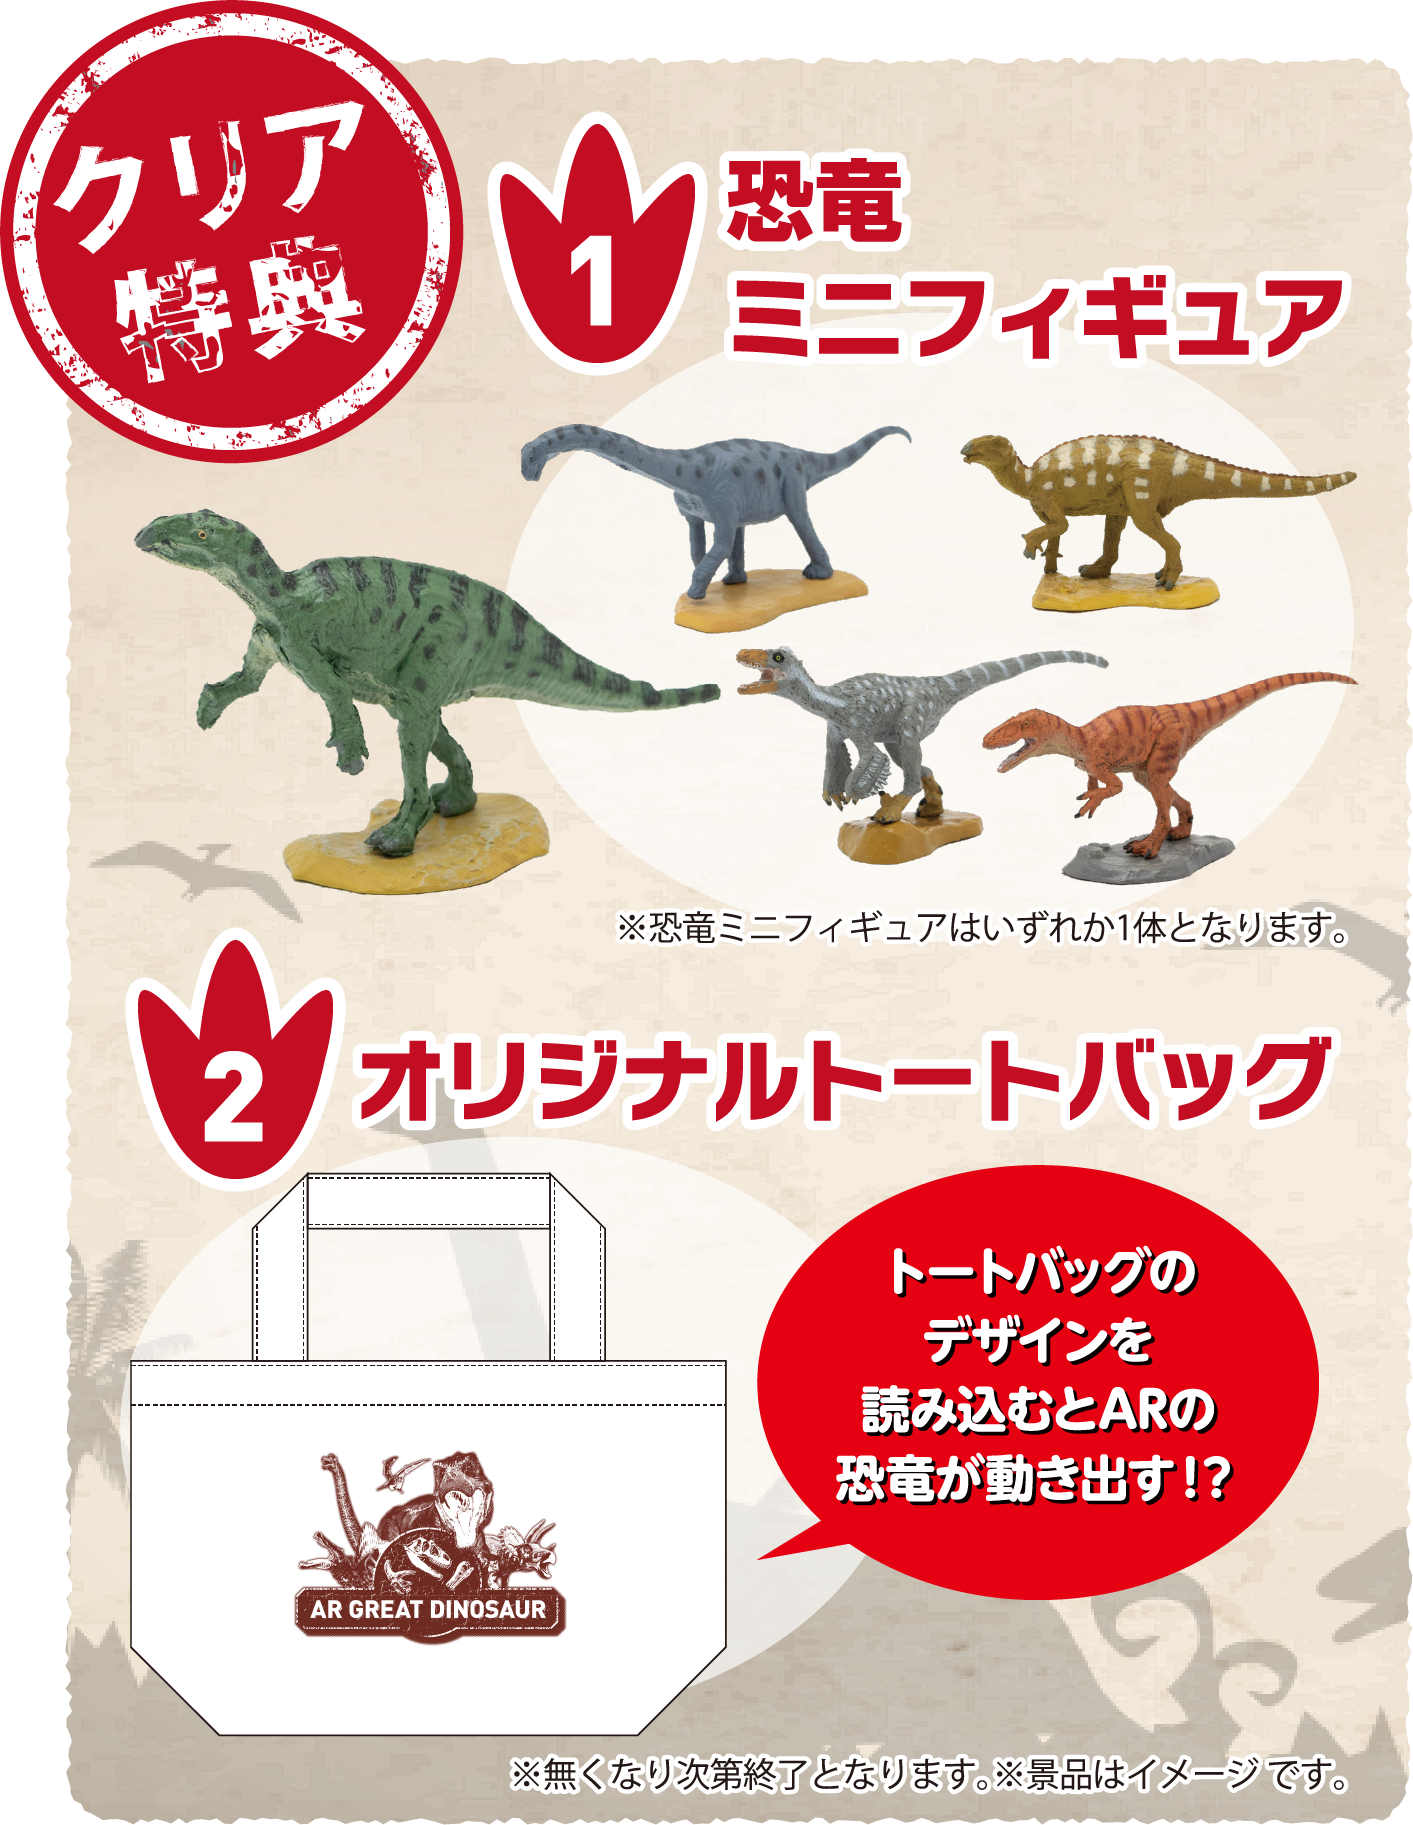 大恐竜ARスタンプラリー 日本の恐竜の秘密 恐竜を学び、楽しめるARスタンプラリー。ARポイントを探して、スタンプをGETしよう！スタンプを集めると、クリア特典がもらえる！恐竜と記念撮影ができるARフォトスポットも♪